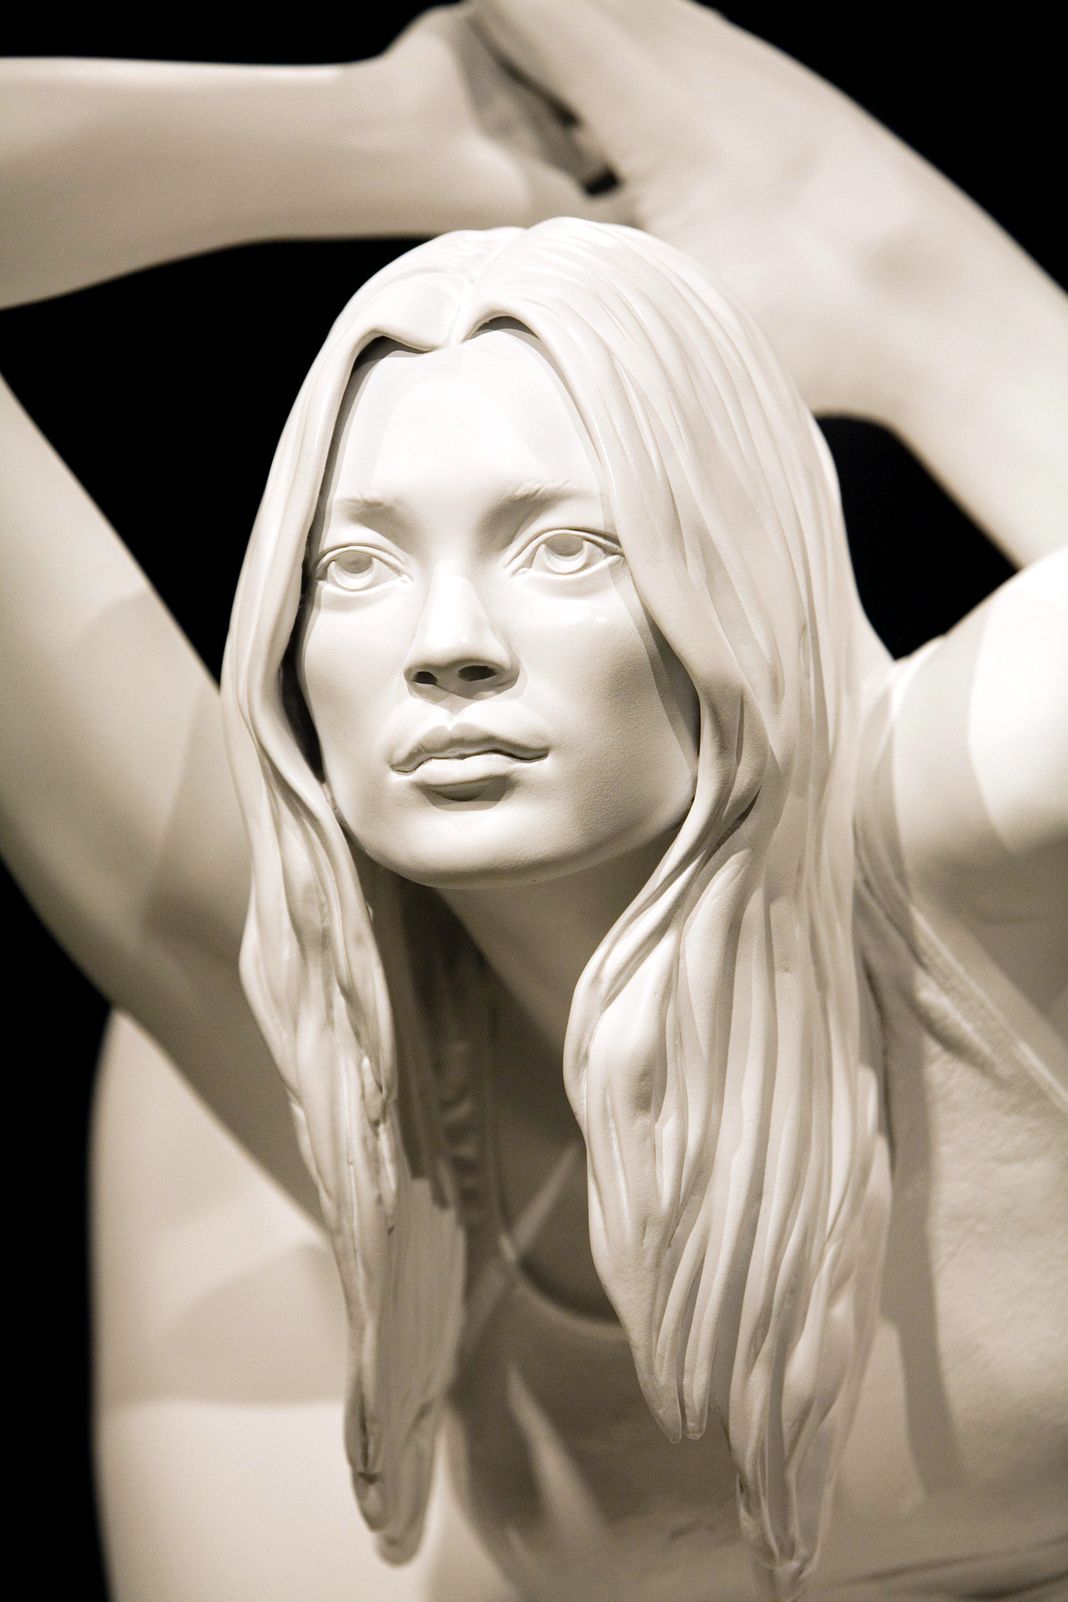 Произведение Марка Куинна под названием «Сфинкс», которое представляет собой скульптуру супермодели Кейт Мосс в позе йоги, выставлено в музее Гронингена